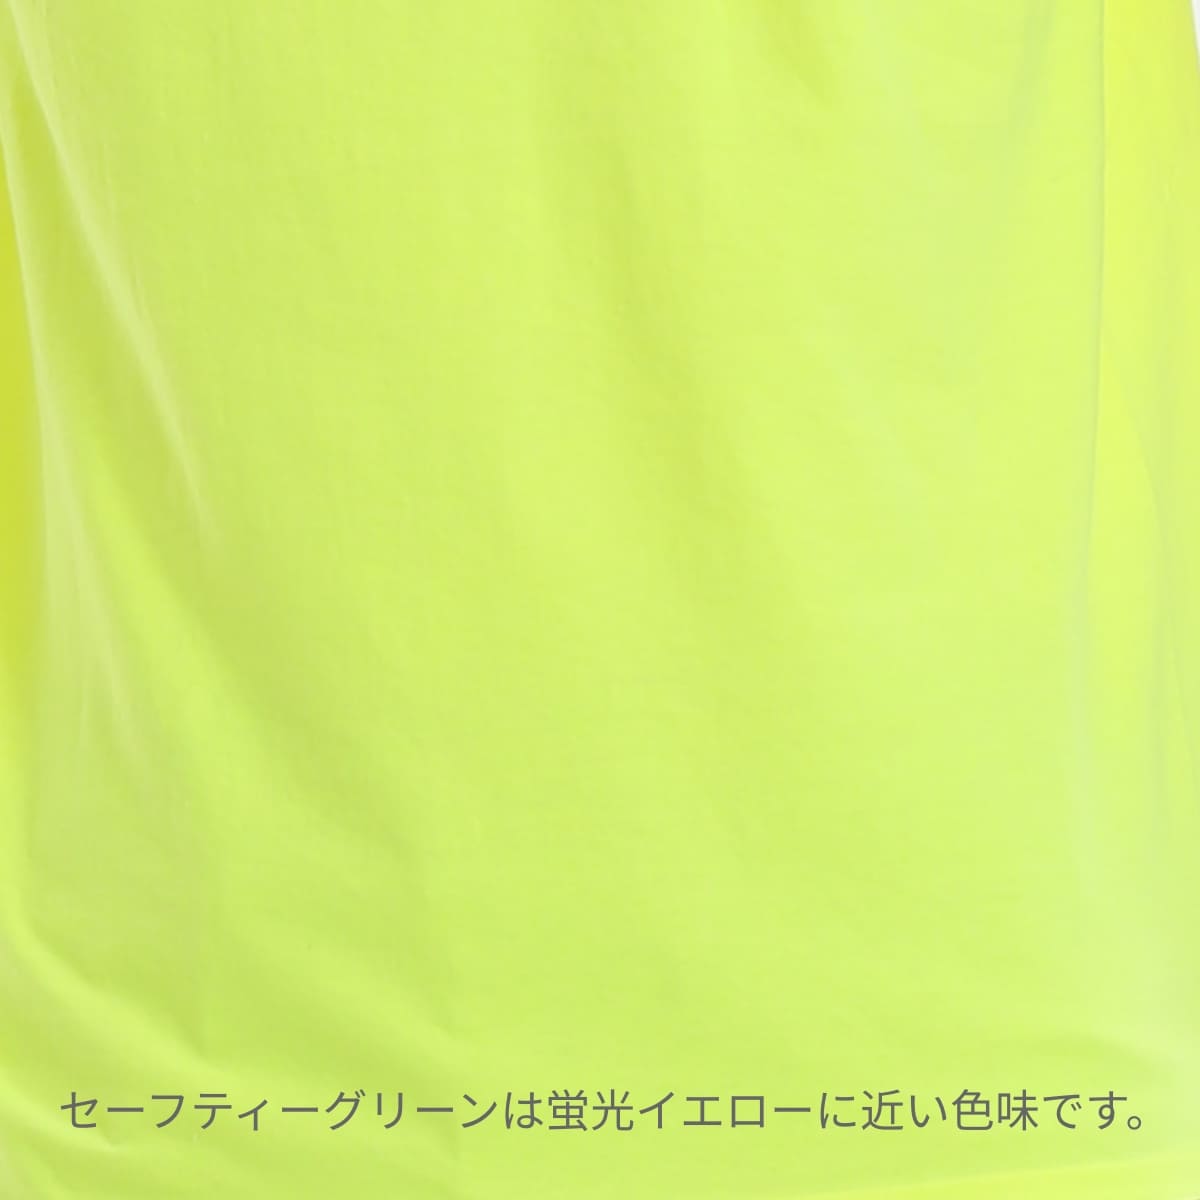 6.0 oz ウルトラコットンポケットTシャツ | メンズ | 1枚 | 2300 | スポーツグレー